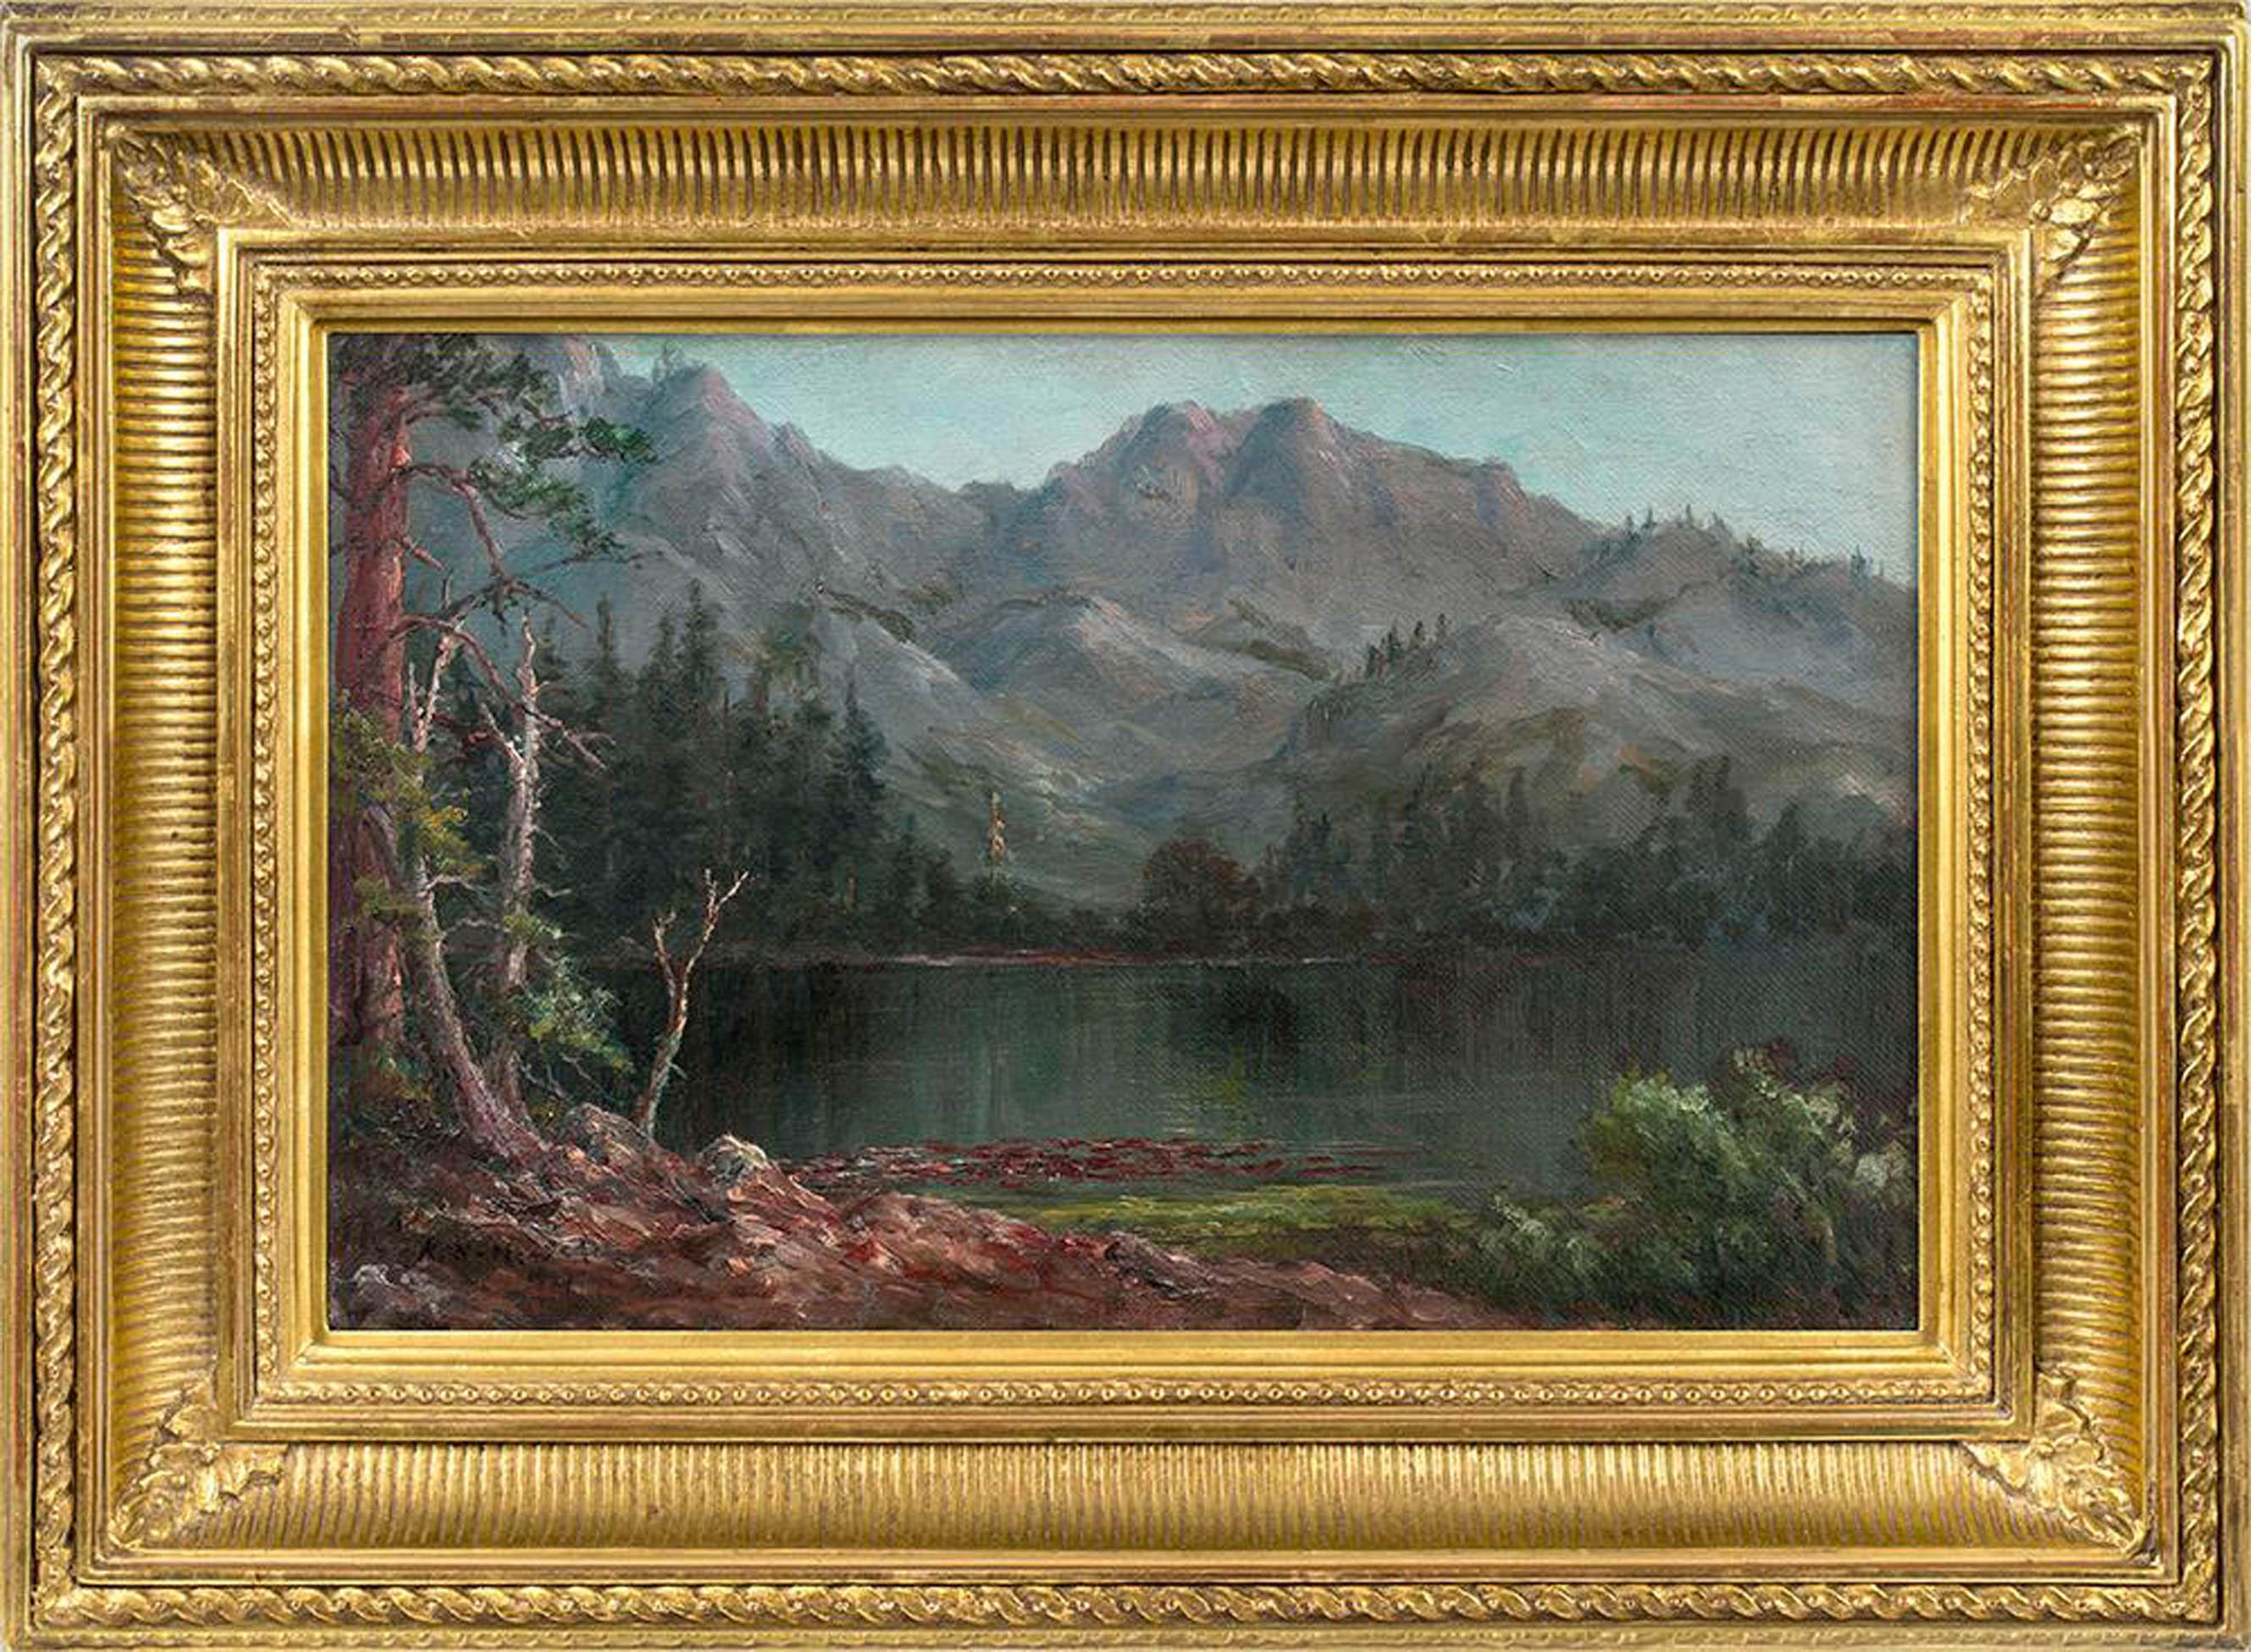 La peinture de la femme artiste Artistics Kate W. La peinture de Newhall "In the Sierras" est une huile sur panneau, mesure 7 x 11 pouces et est signée en bas à gauche. L'œuvre est encadrée dans un cadre élégant, adapté à l'époque, et prête à être